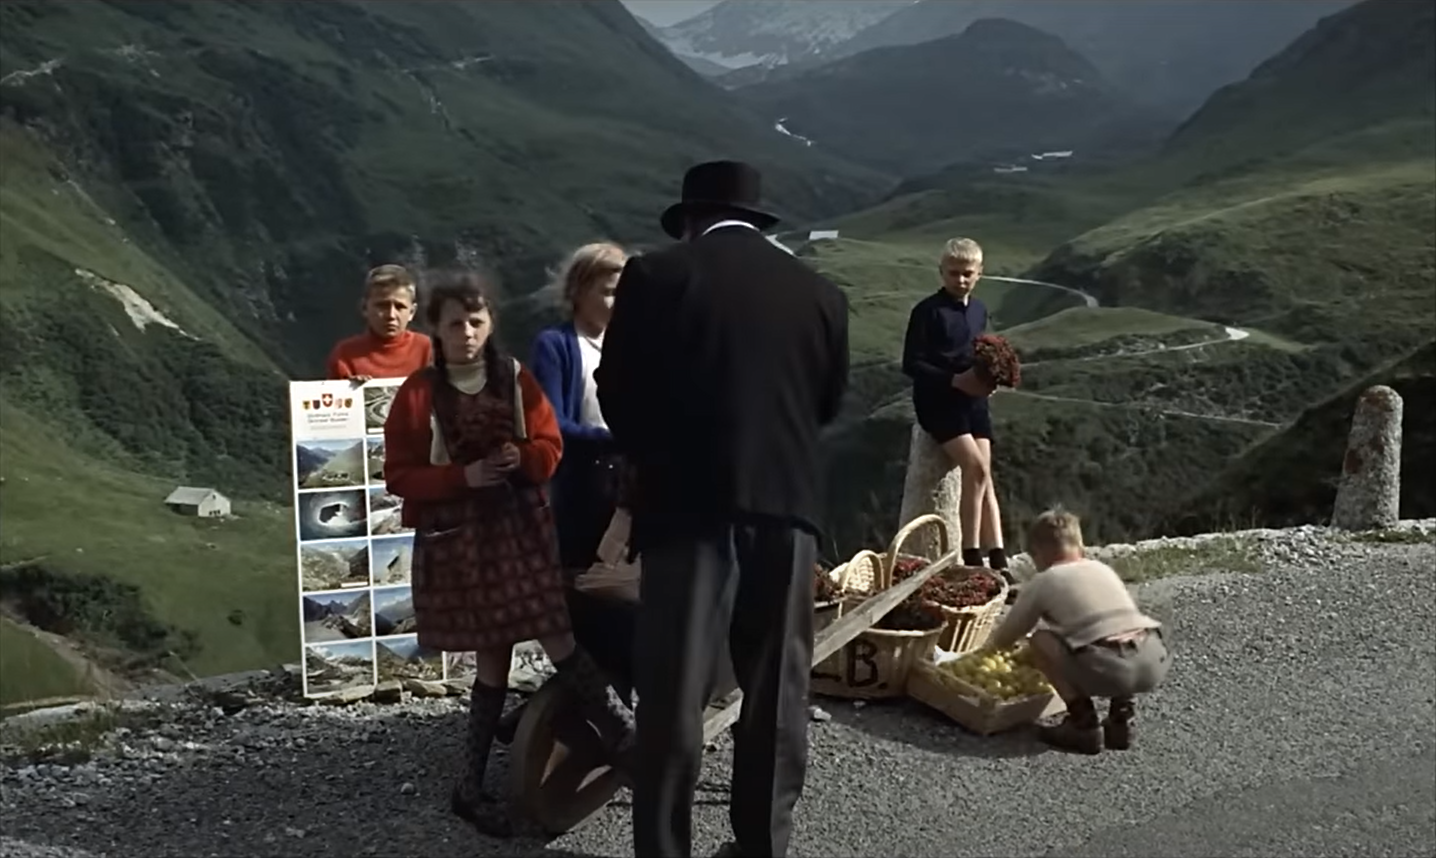 L'inquiétant Goldfinger rencontre la population suisse dans la vallée d'Urseren, au pied du col de la Furka.